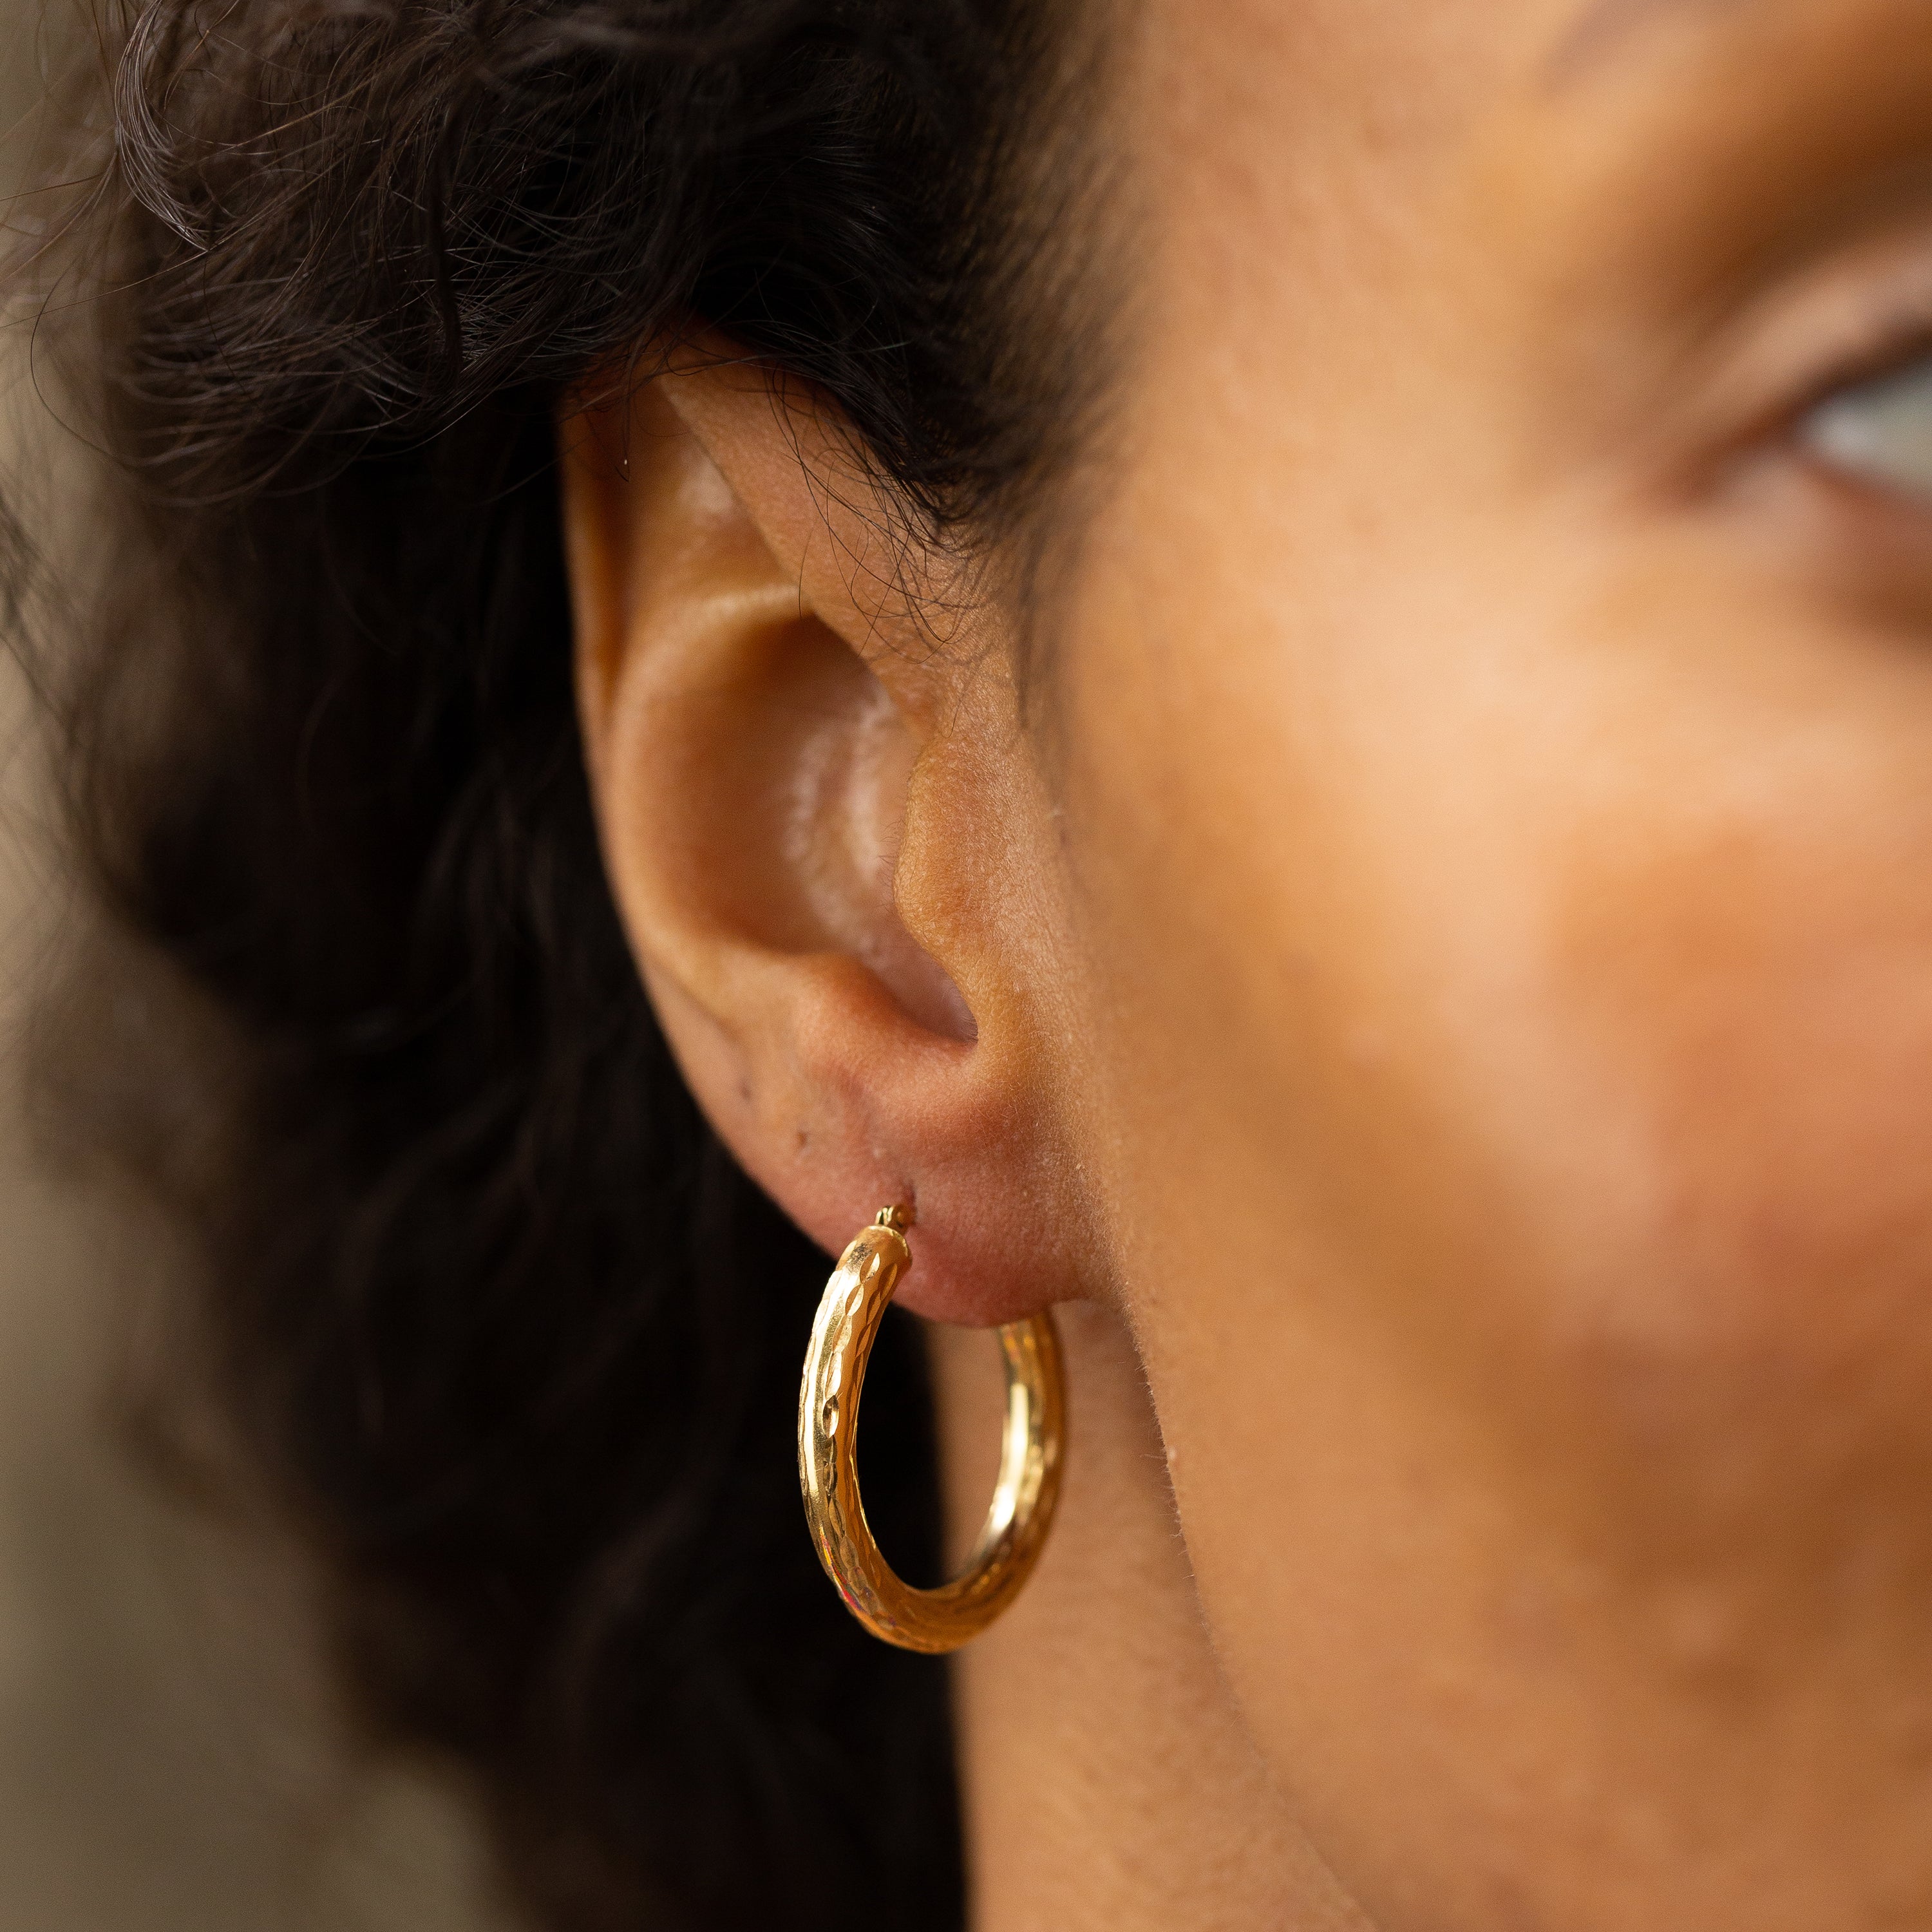 Hammered 1-Inch 14k Gold Hoop Earrings